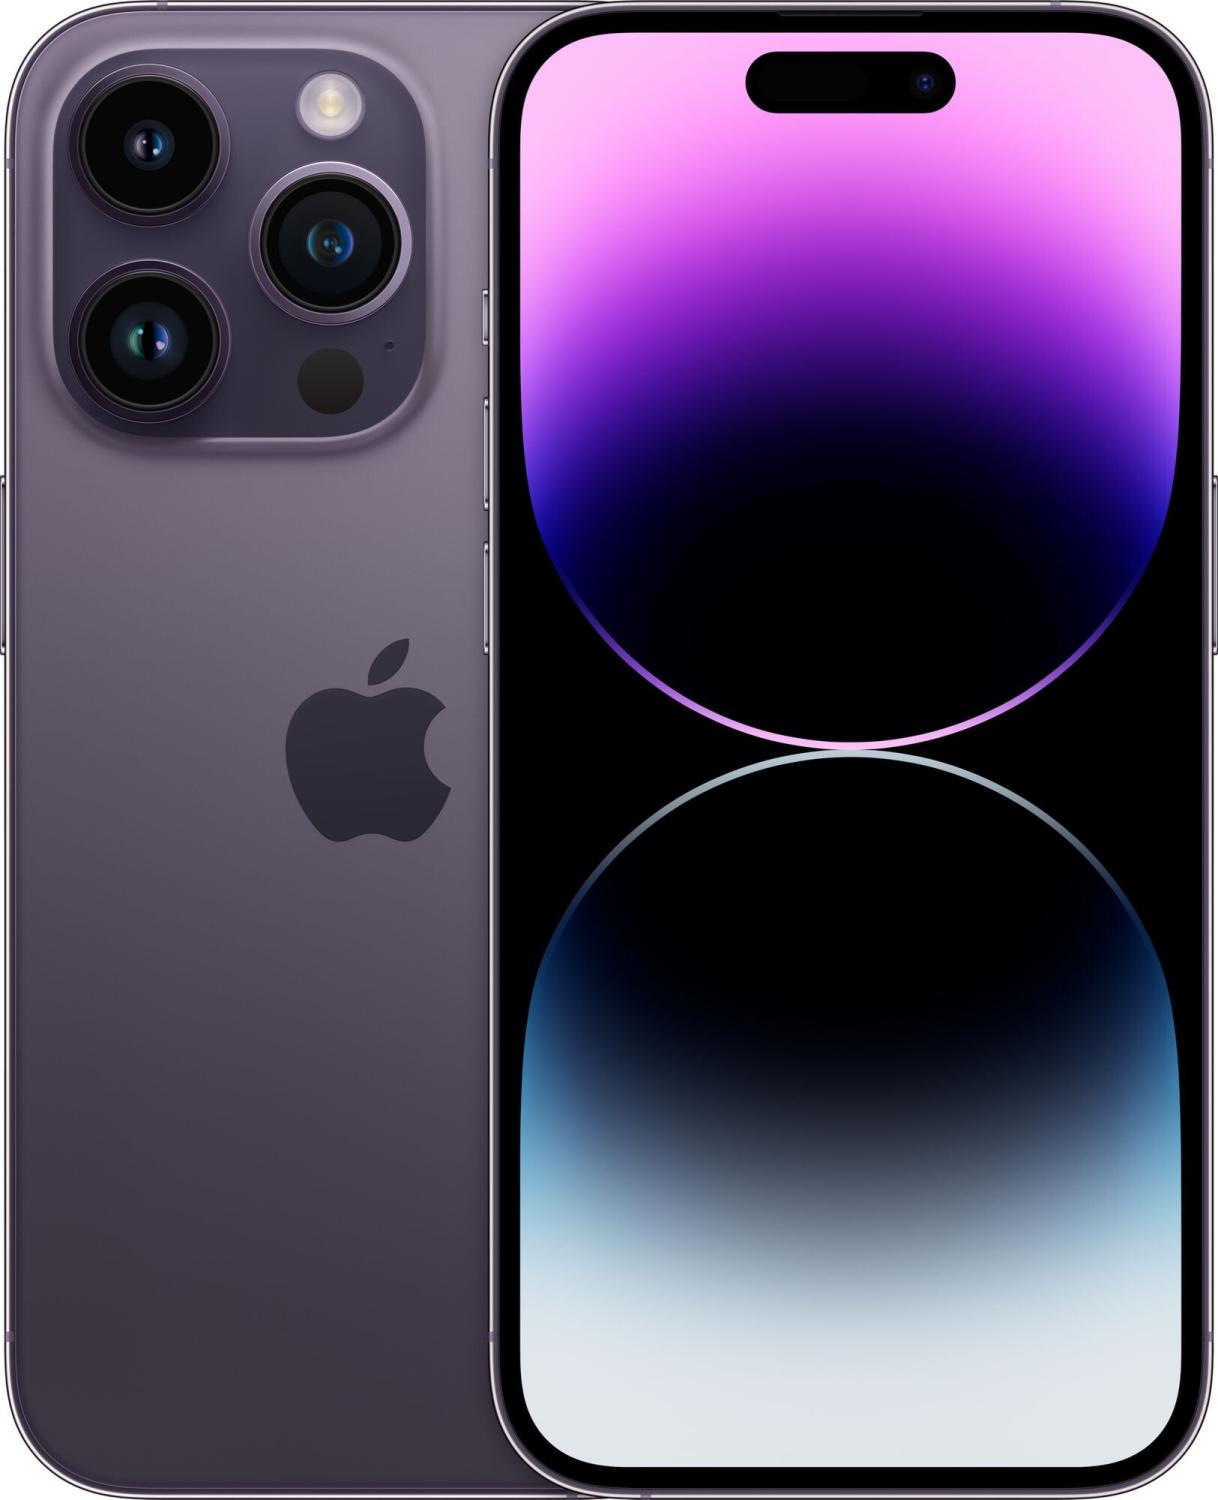 Смартфон Apple iPhone 14 Pro Max 256GB Global Глубокий фиолетовый